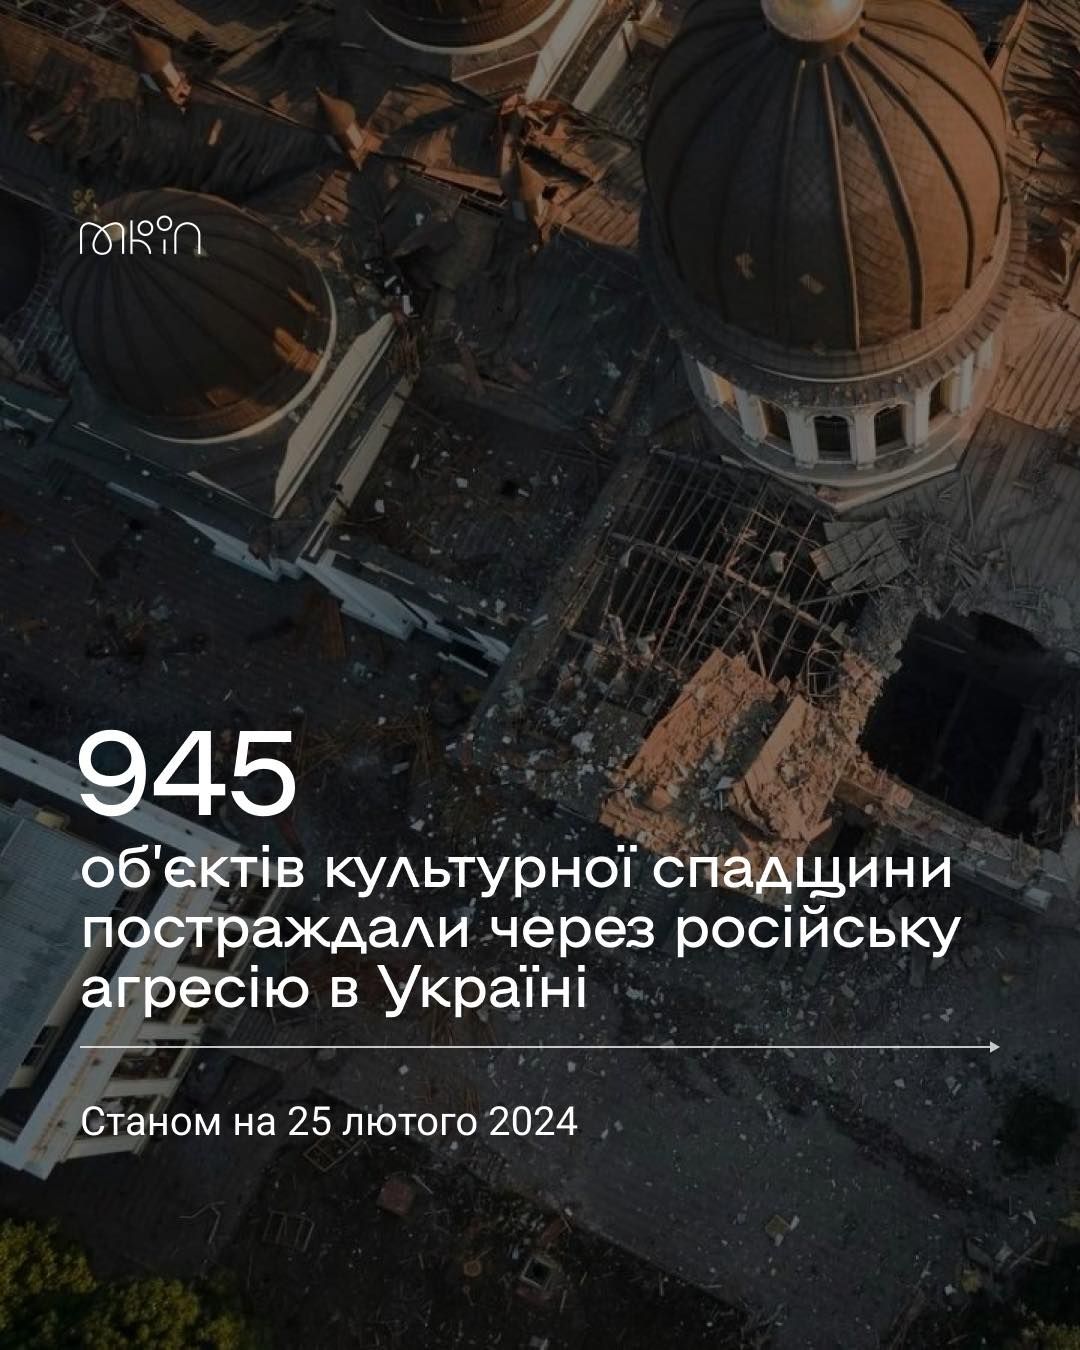 Російські терористи пошкодили або зруйнували 945 пам’яток культурної спадщини України